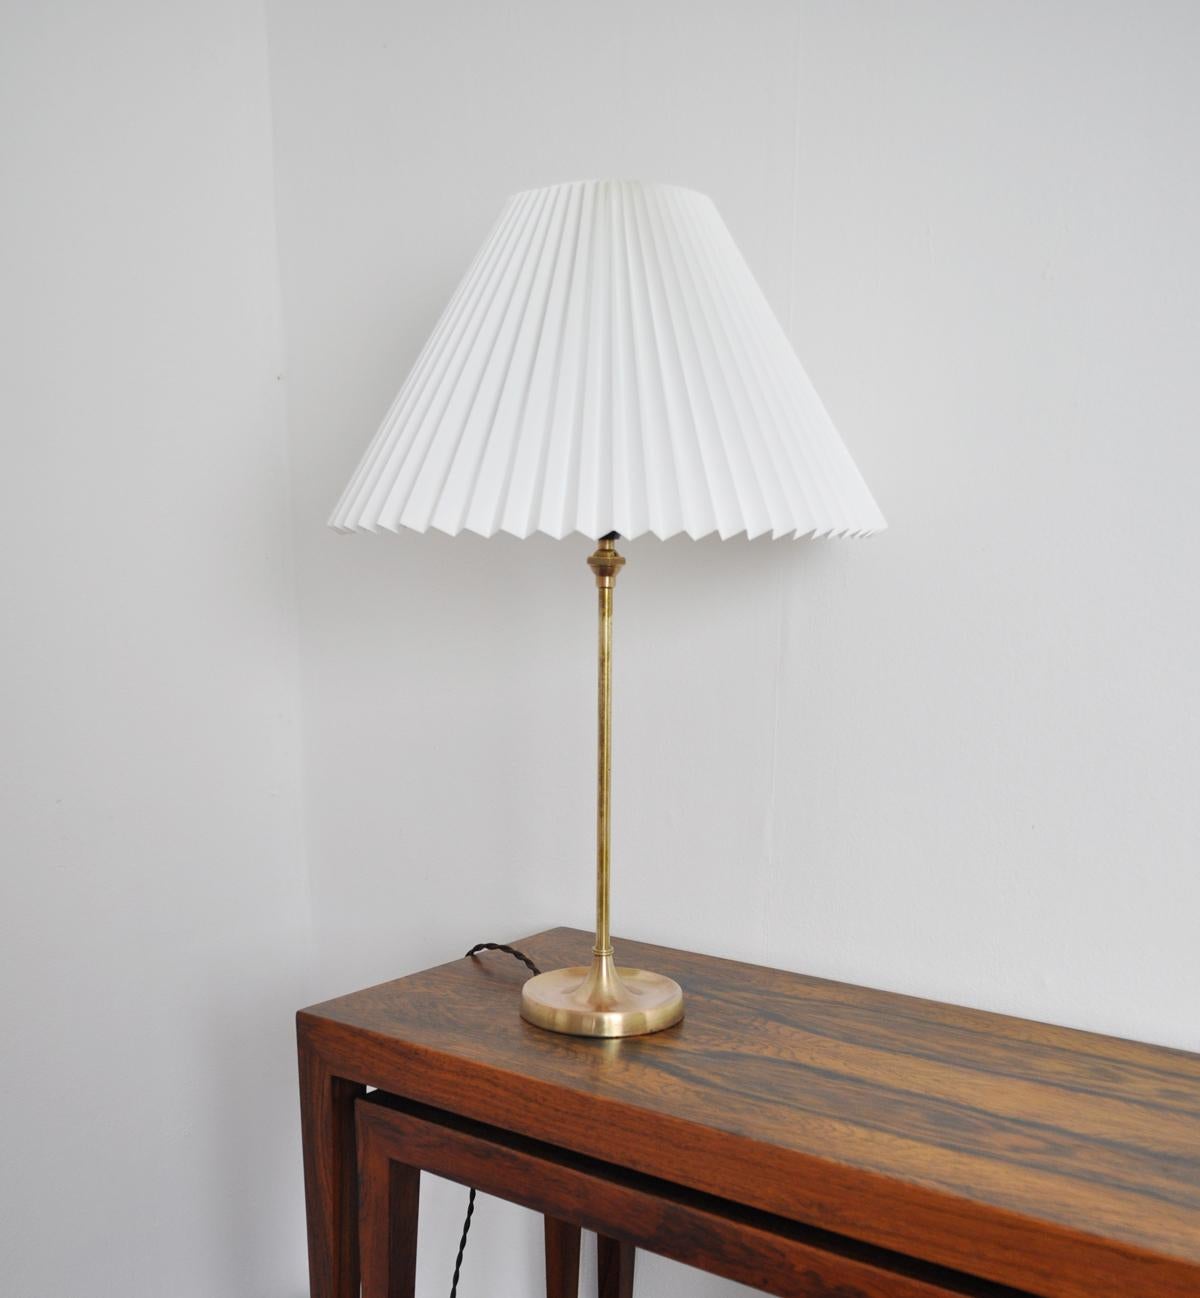 Danish Brass Table Lamp Designed by Esben Klint for Le Klint, 1948